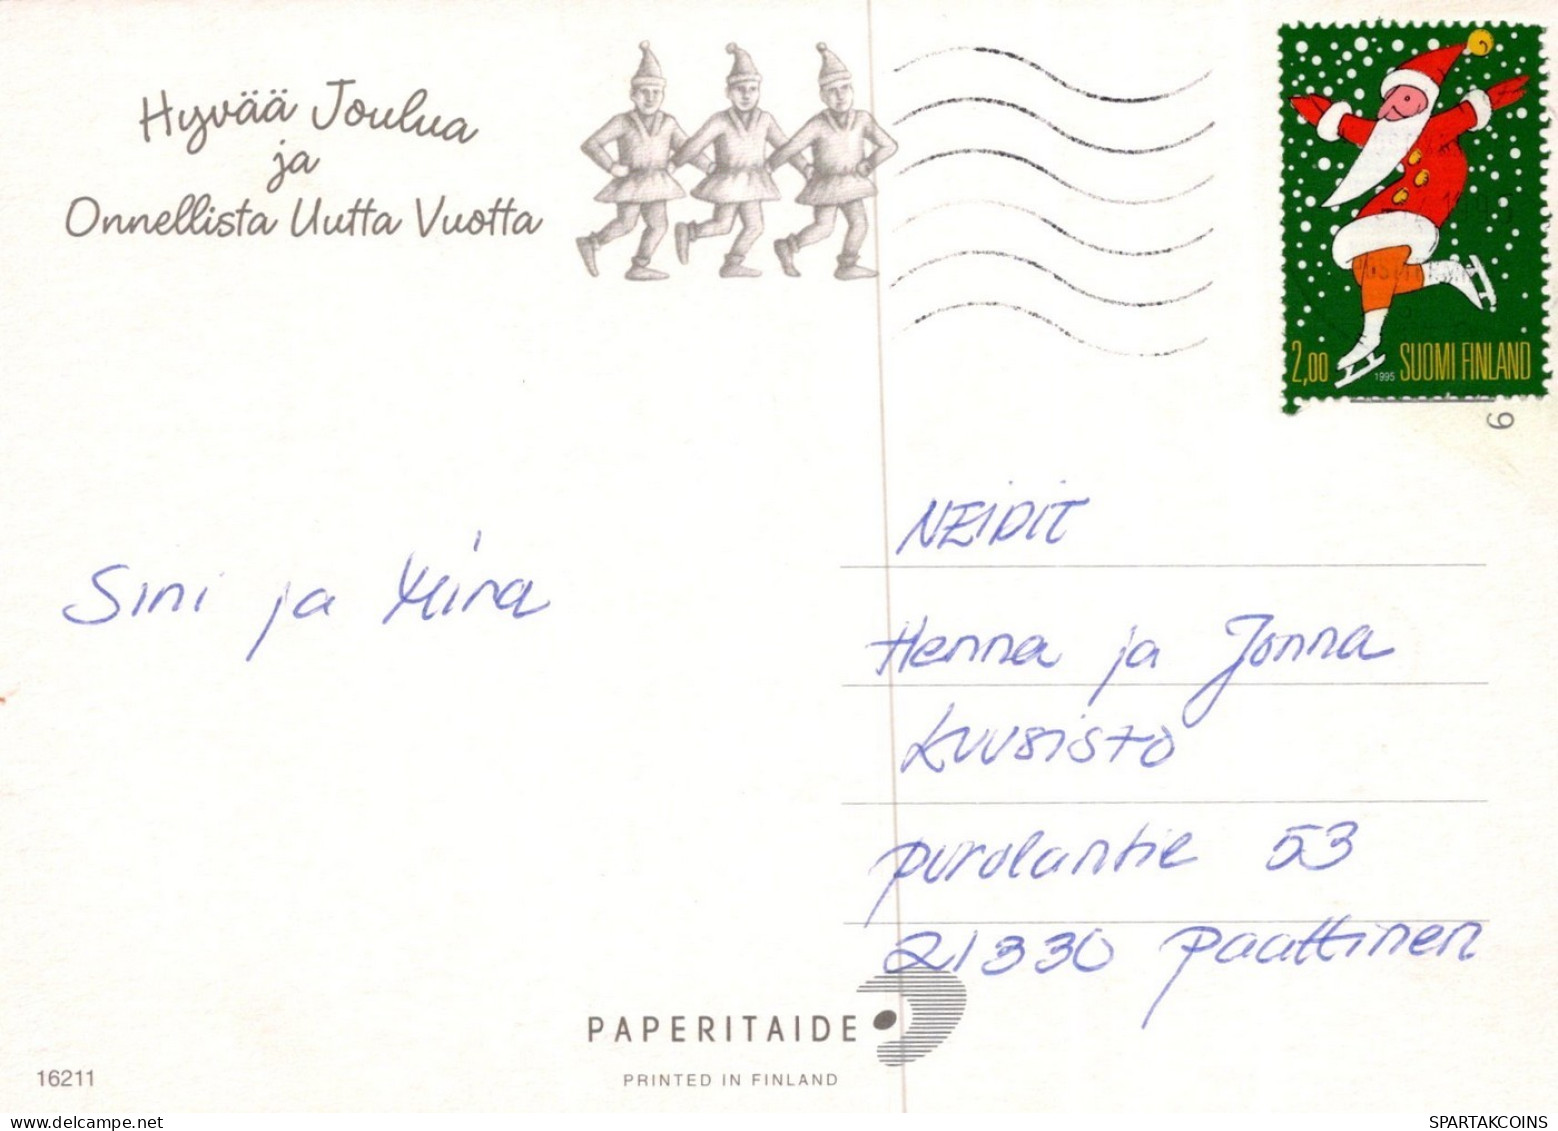 WEIHNACHTSMANN SANTA CLAUS WEIHNACHTSFERIEN Vintage Postkarte CPSM #PAK153.A - Santa Claus